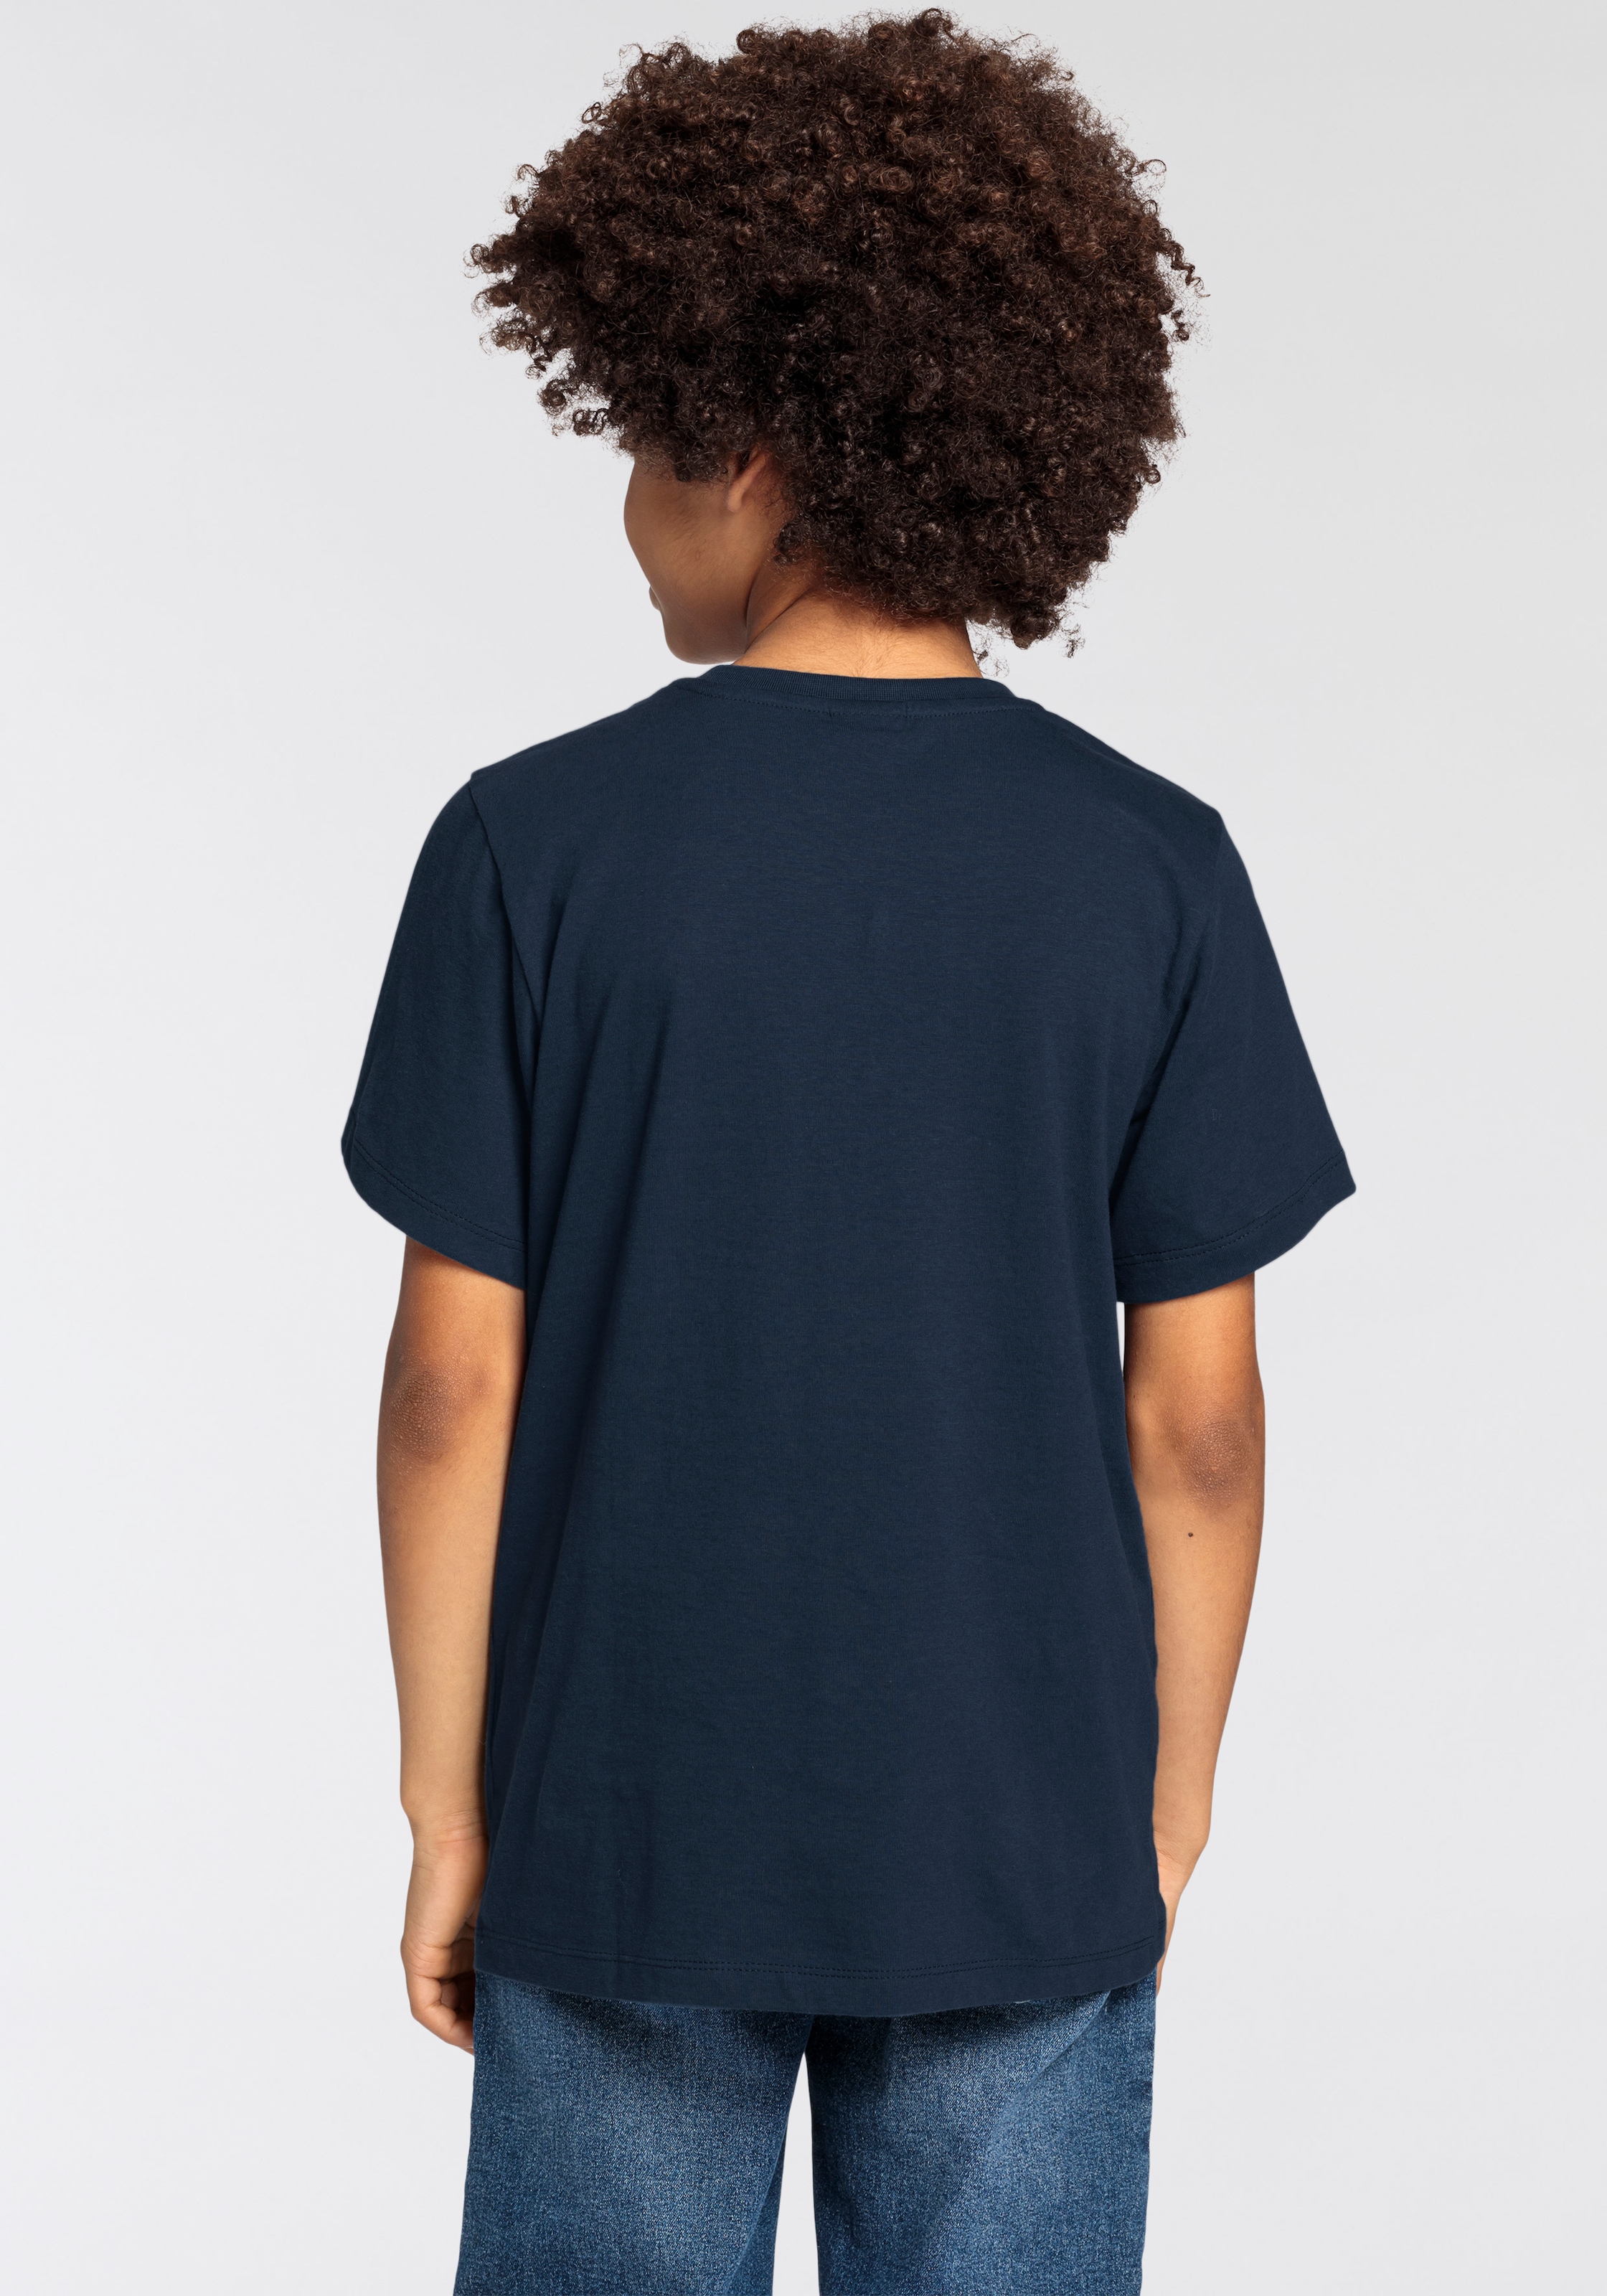 KIDSWORLD T-Shirt »CHECK DAS DIGGA«, Sprücheshirt für Jungen bestellen |  BAUR